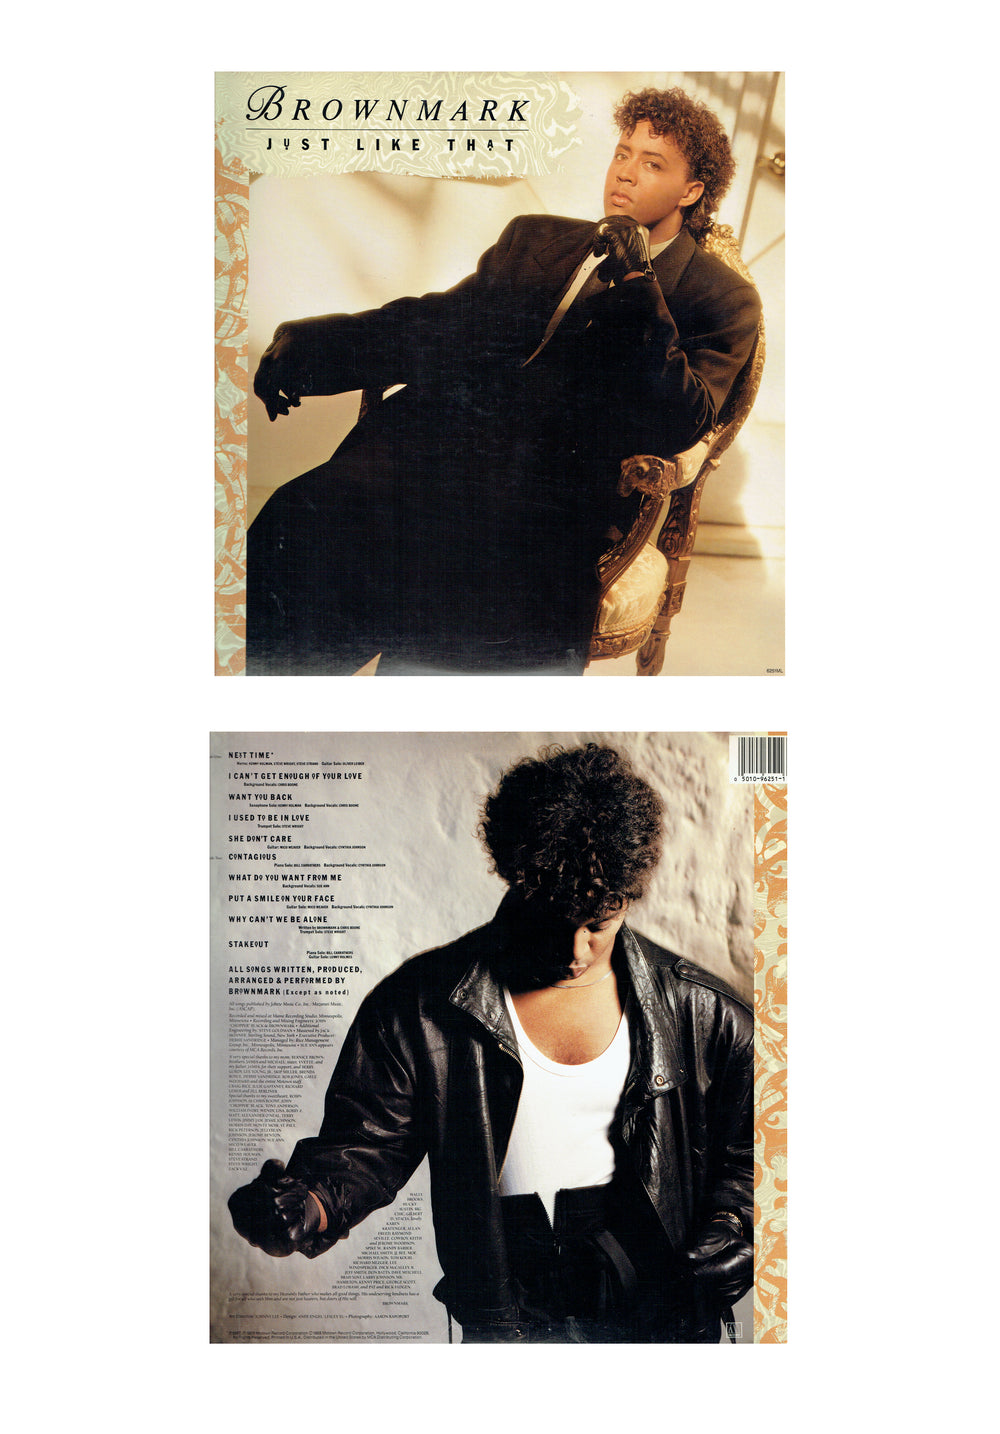 Brownmark Just Like That VINYL Album 1998 10 Tracks UK Release Prince